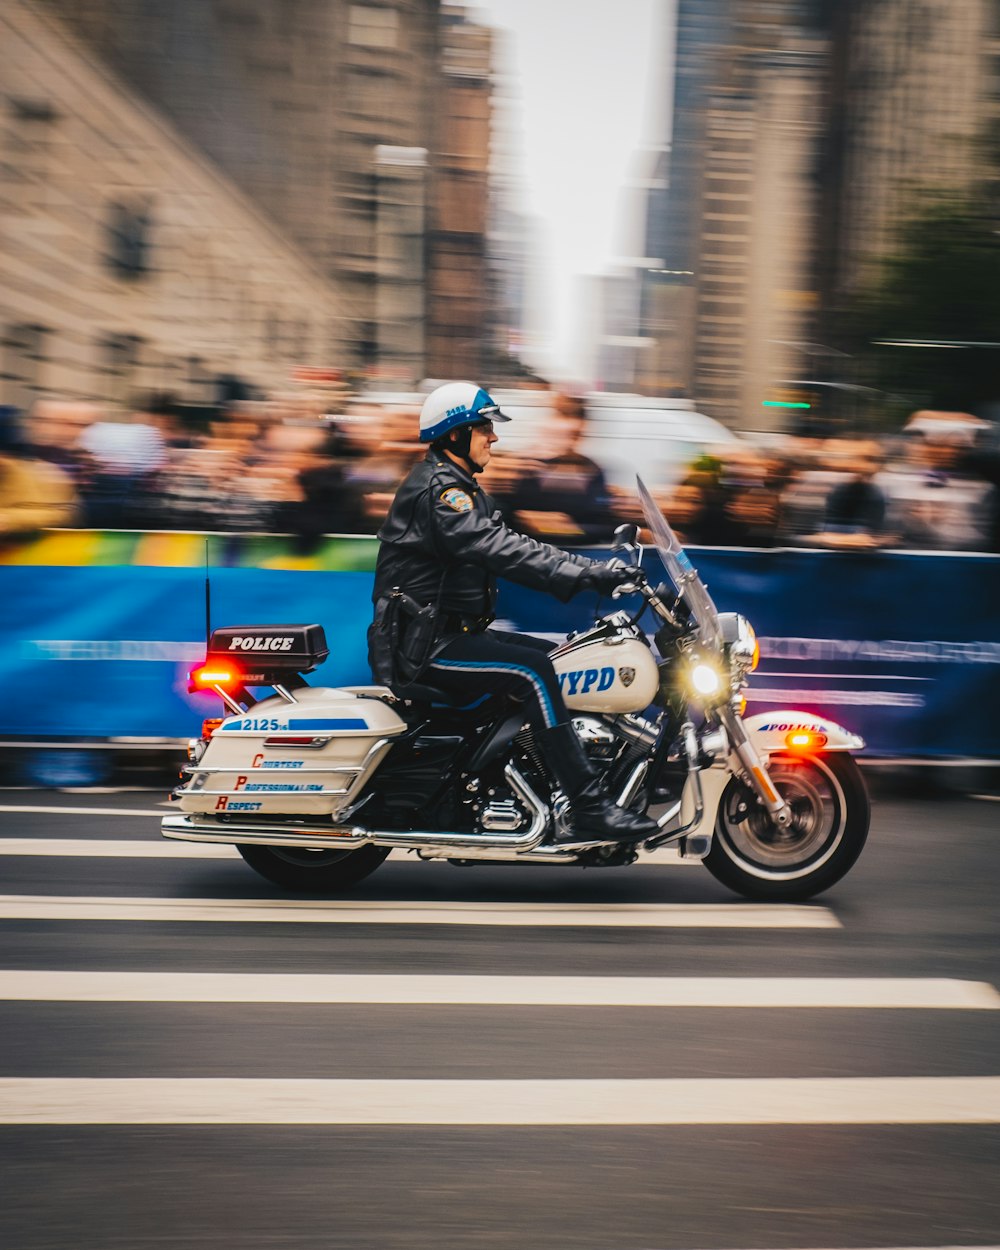 흰색 오토바이를 타고 있는 경찰관